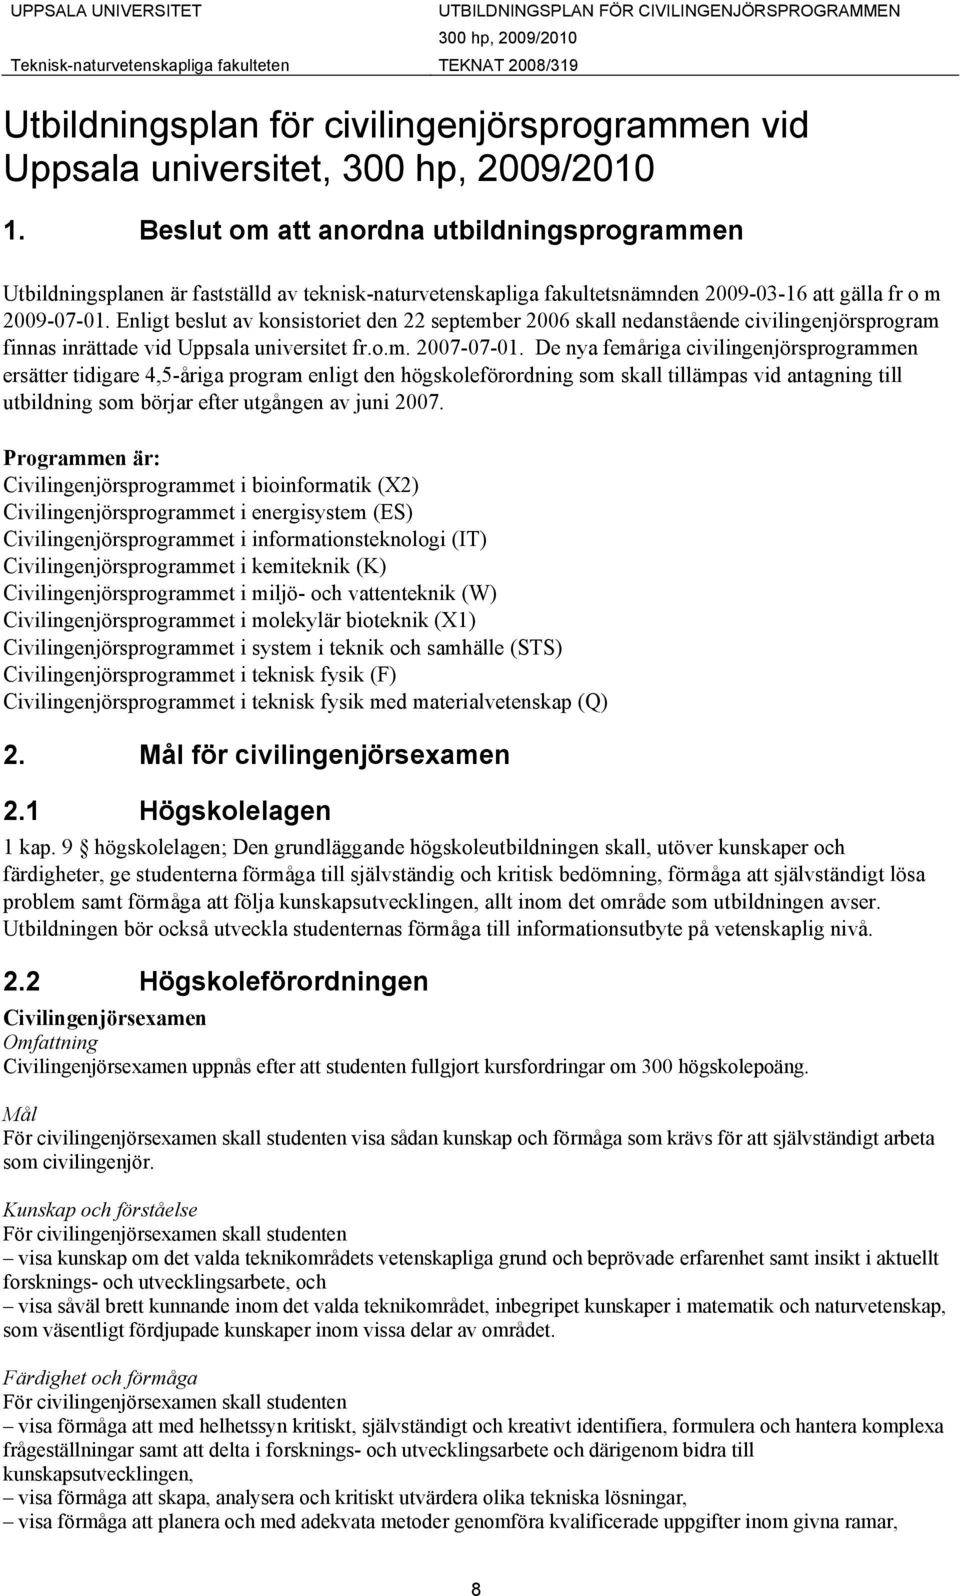 Enligt beslut av konsistoriet den 22 september 2006 skall nedanstående civilingenjörsprogram finnas inrättade vid Uppsala universitet fr.o.m. 2007-07-01.